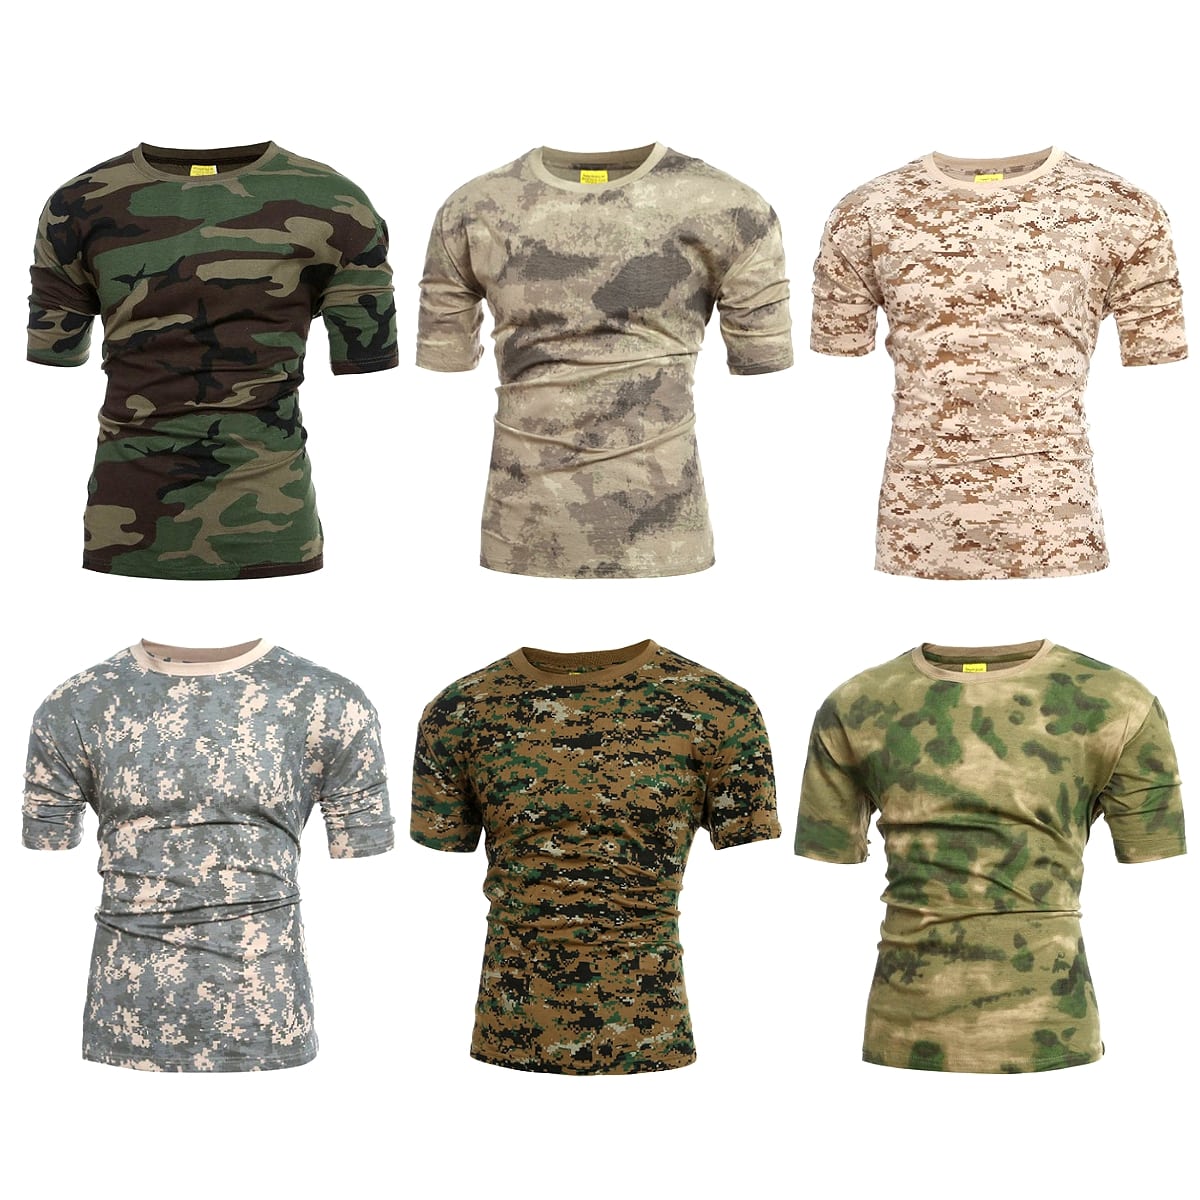 【送料無料!】全6色! 4サイズ! [Men's Military Camouflage Quick Dry T-Shirt] メンズ ミリタリーカモフラージュ クイックドライTシャツ! 半袖 プルオーバー インナー アーミー 戦闘服 コンバット 迷彩 サバゲー バイクに!